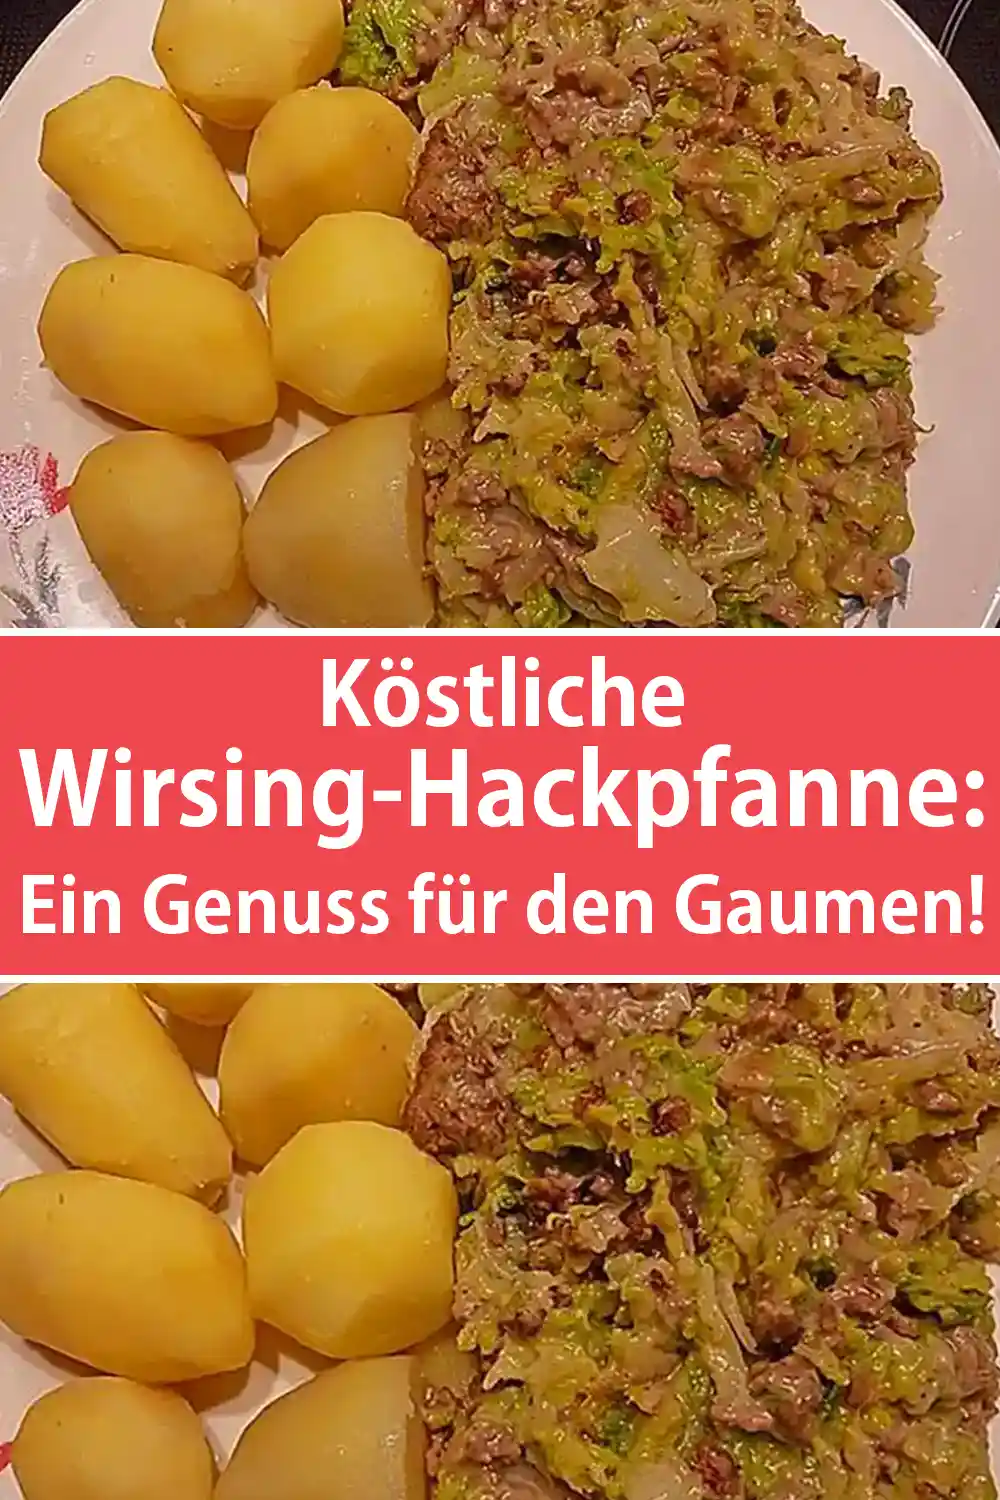 Köstliche Wirsing-Hackpfanne Rezept: Ein Genuss für den Gaumen!